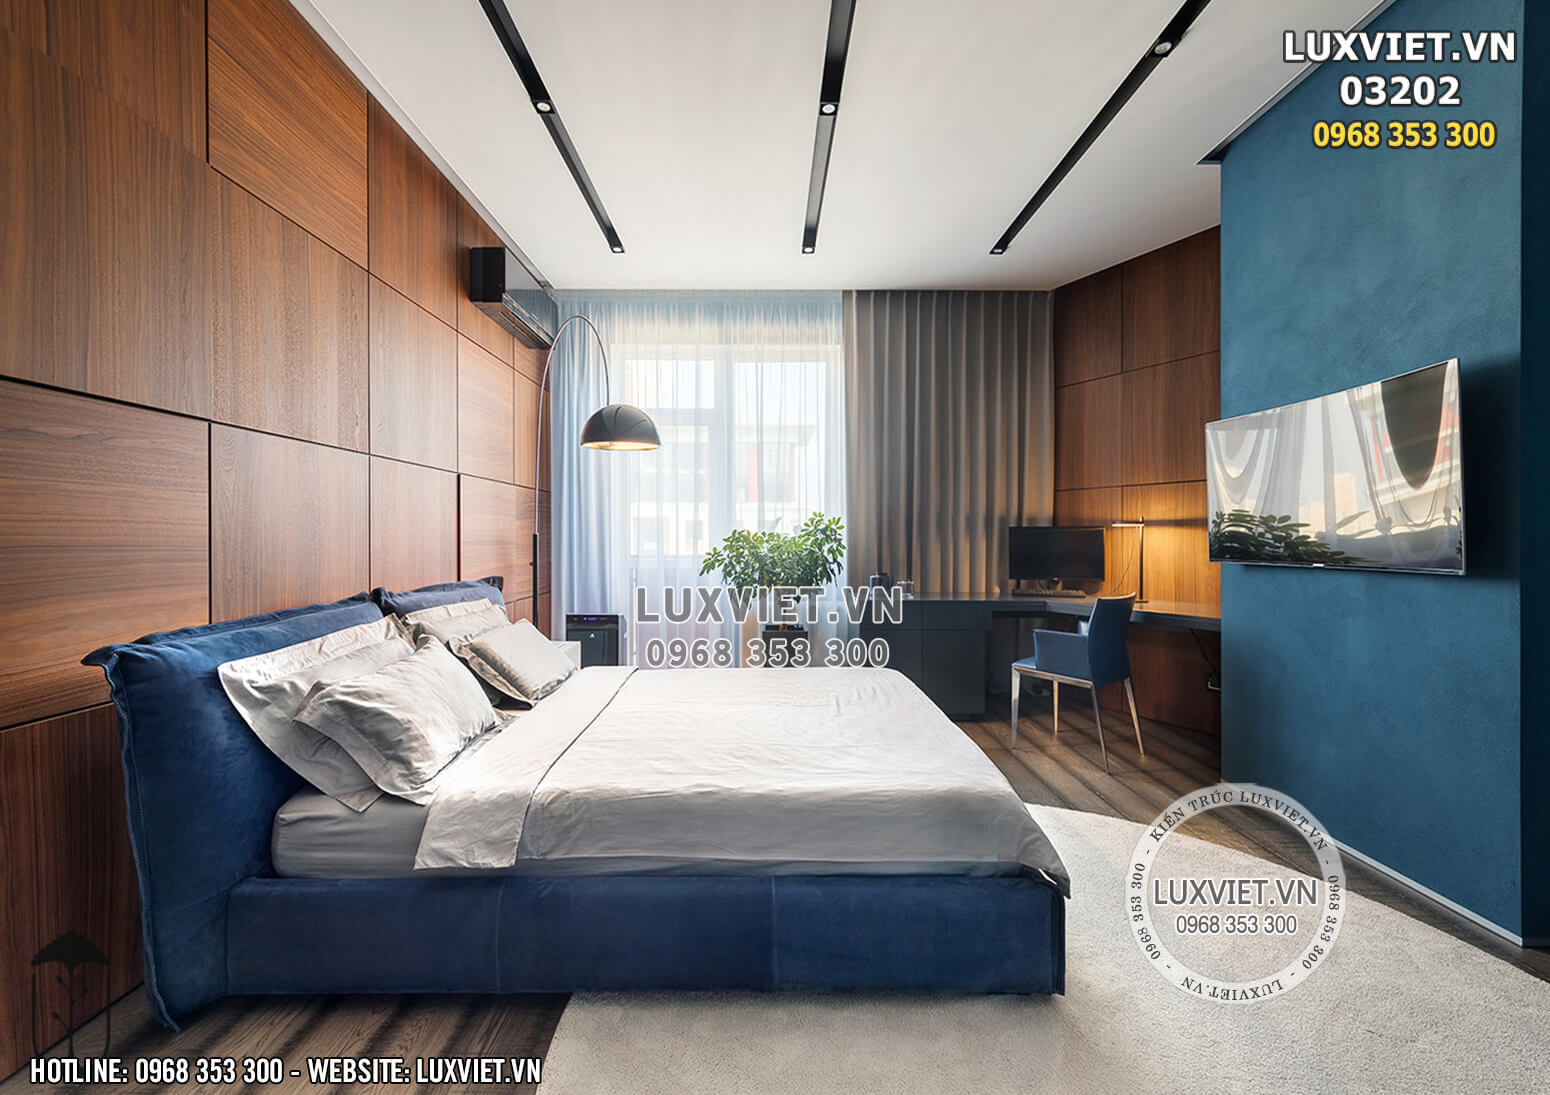 Hình ảnh: Thiết kế nội thất căn hộ hiện đại tại Hà Nội - LV 03202